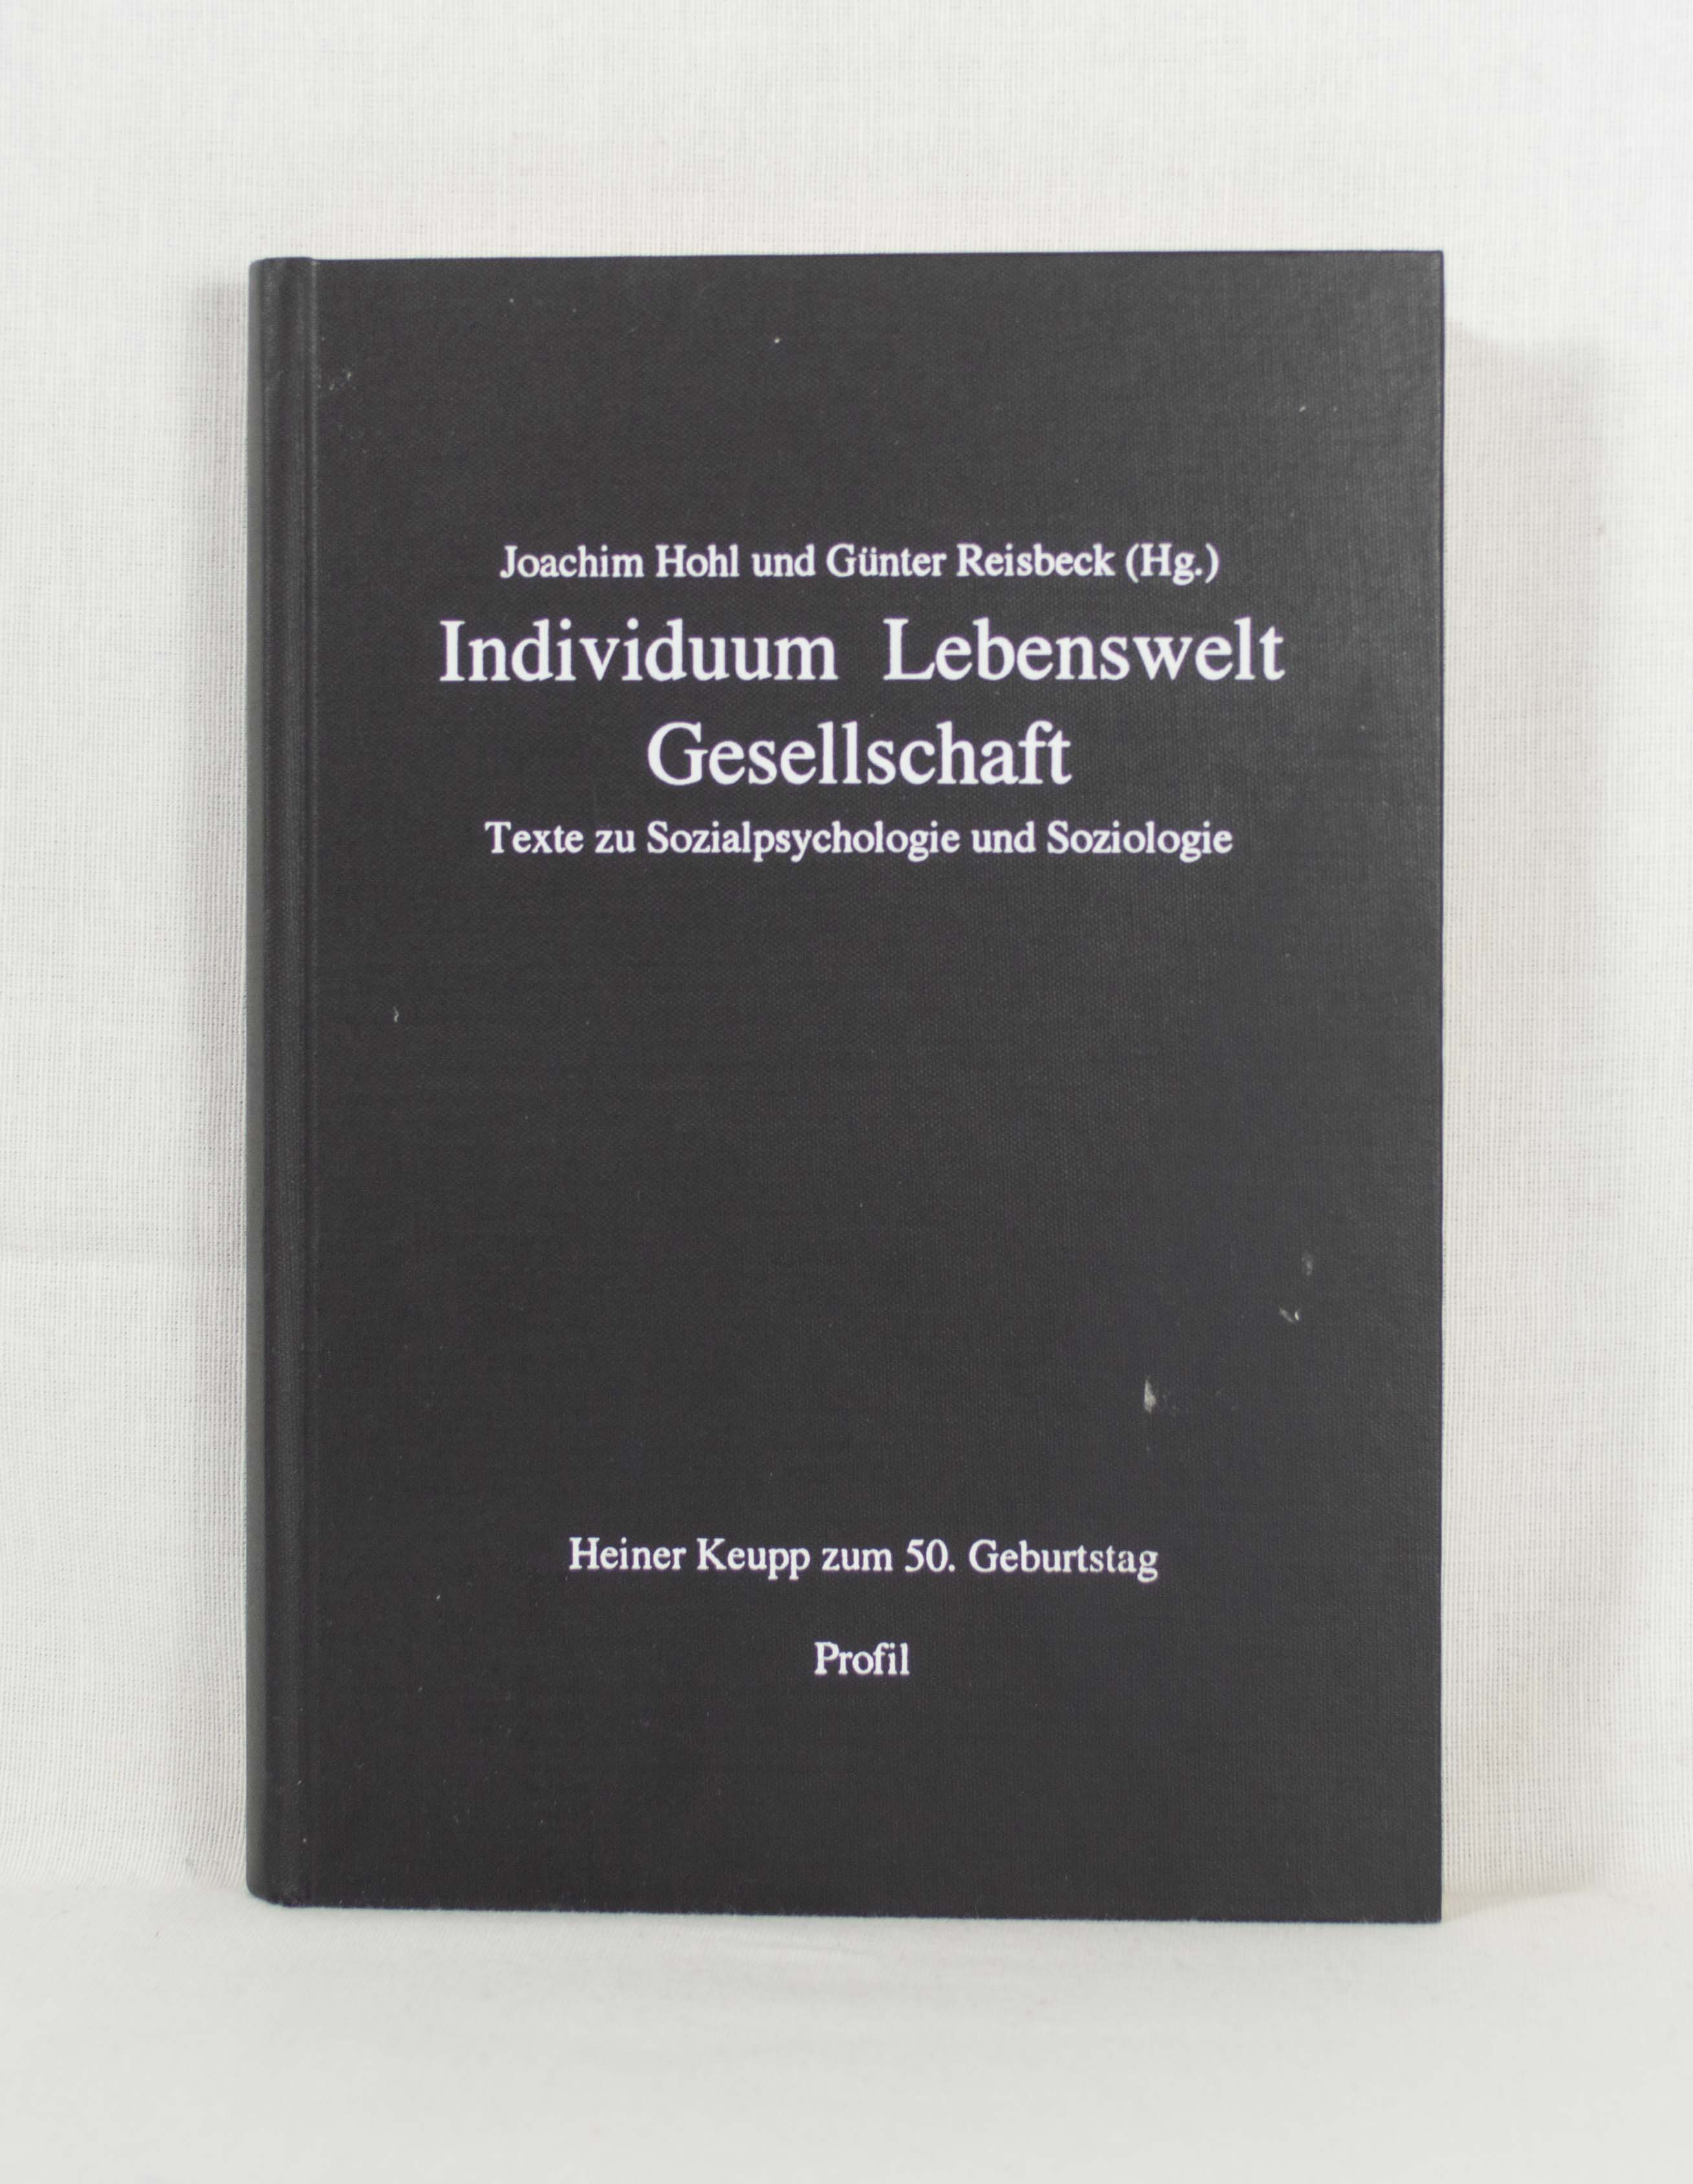 Individuum, Lebenswelt, Gesellschaft: Texte zur Sozialpsychologie und Soziologie. Heiner Keupp zum 50. Geburtstag. - Hohl, Joachim und Günter Reisbeck (Hrsg.)